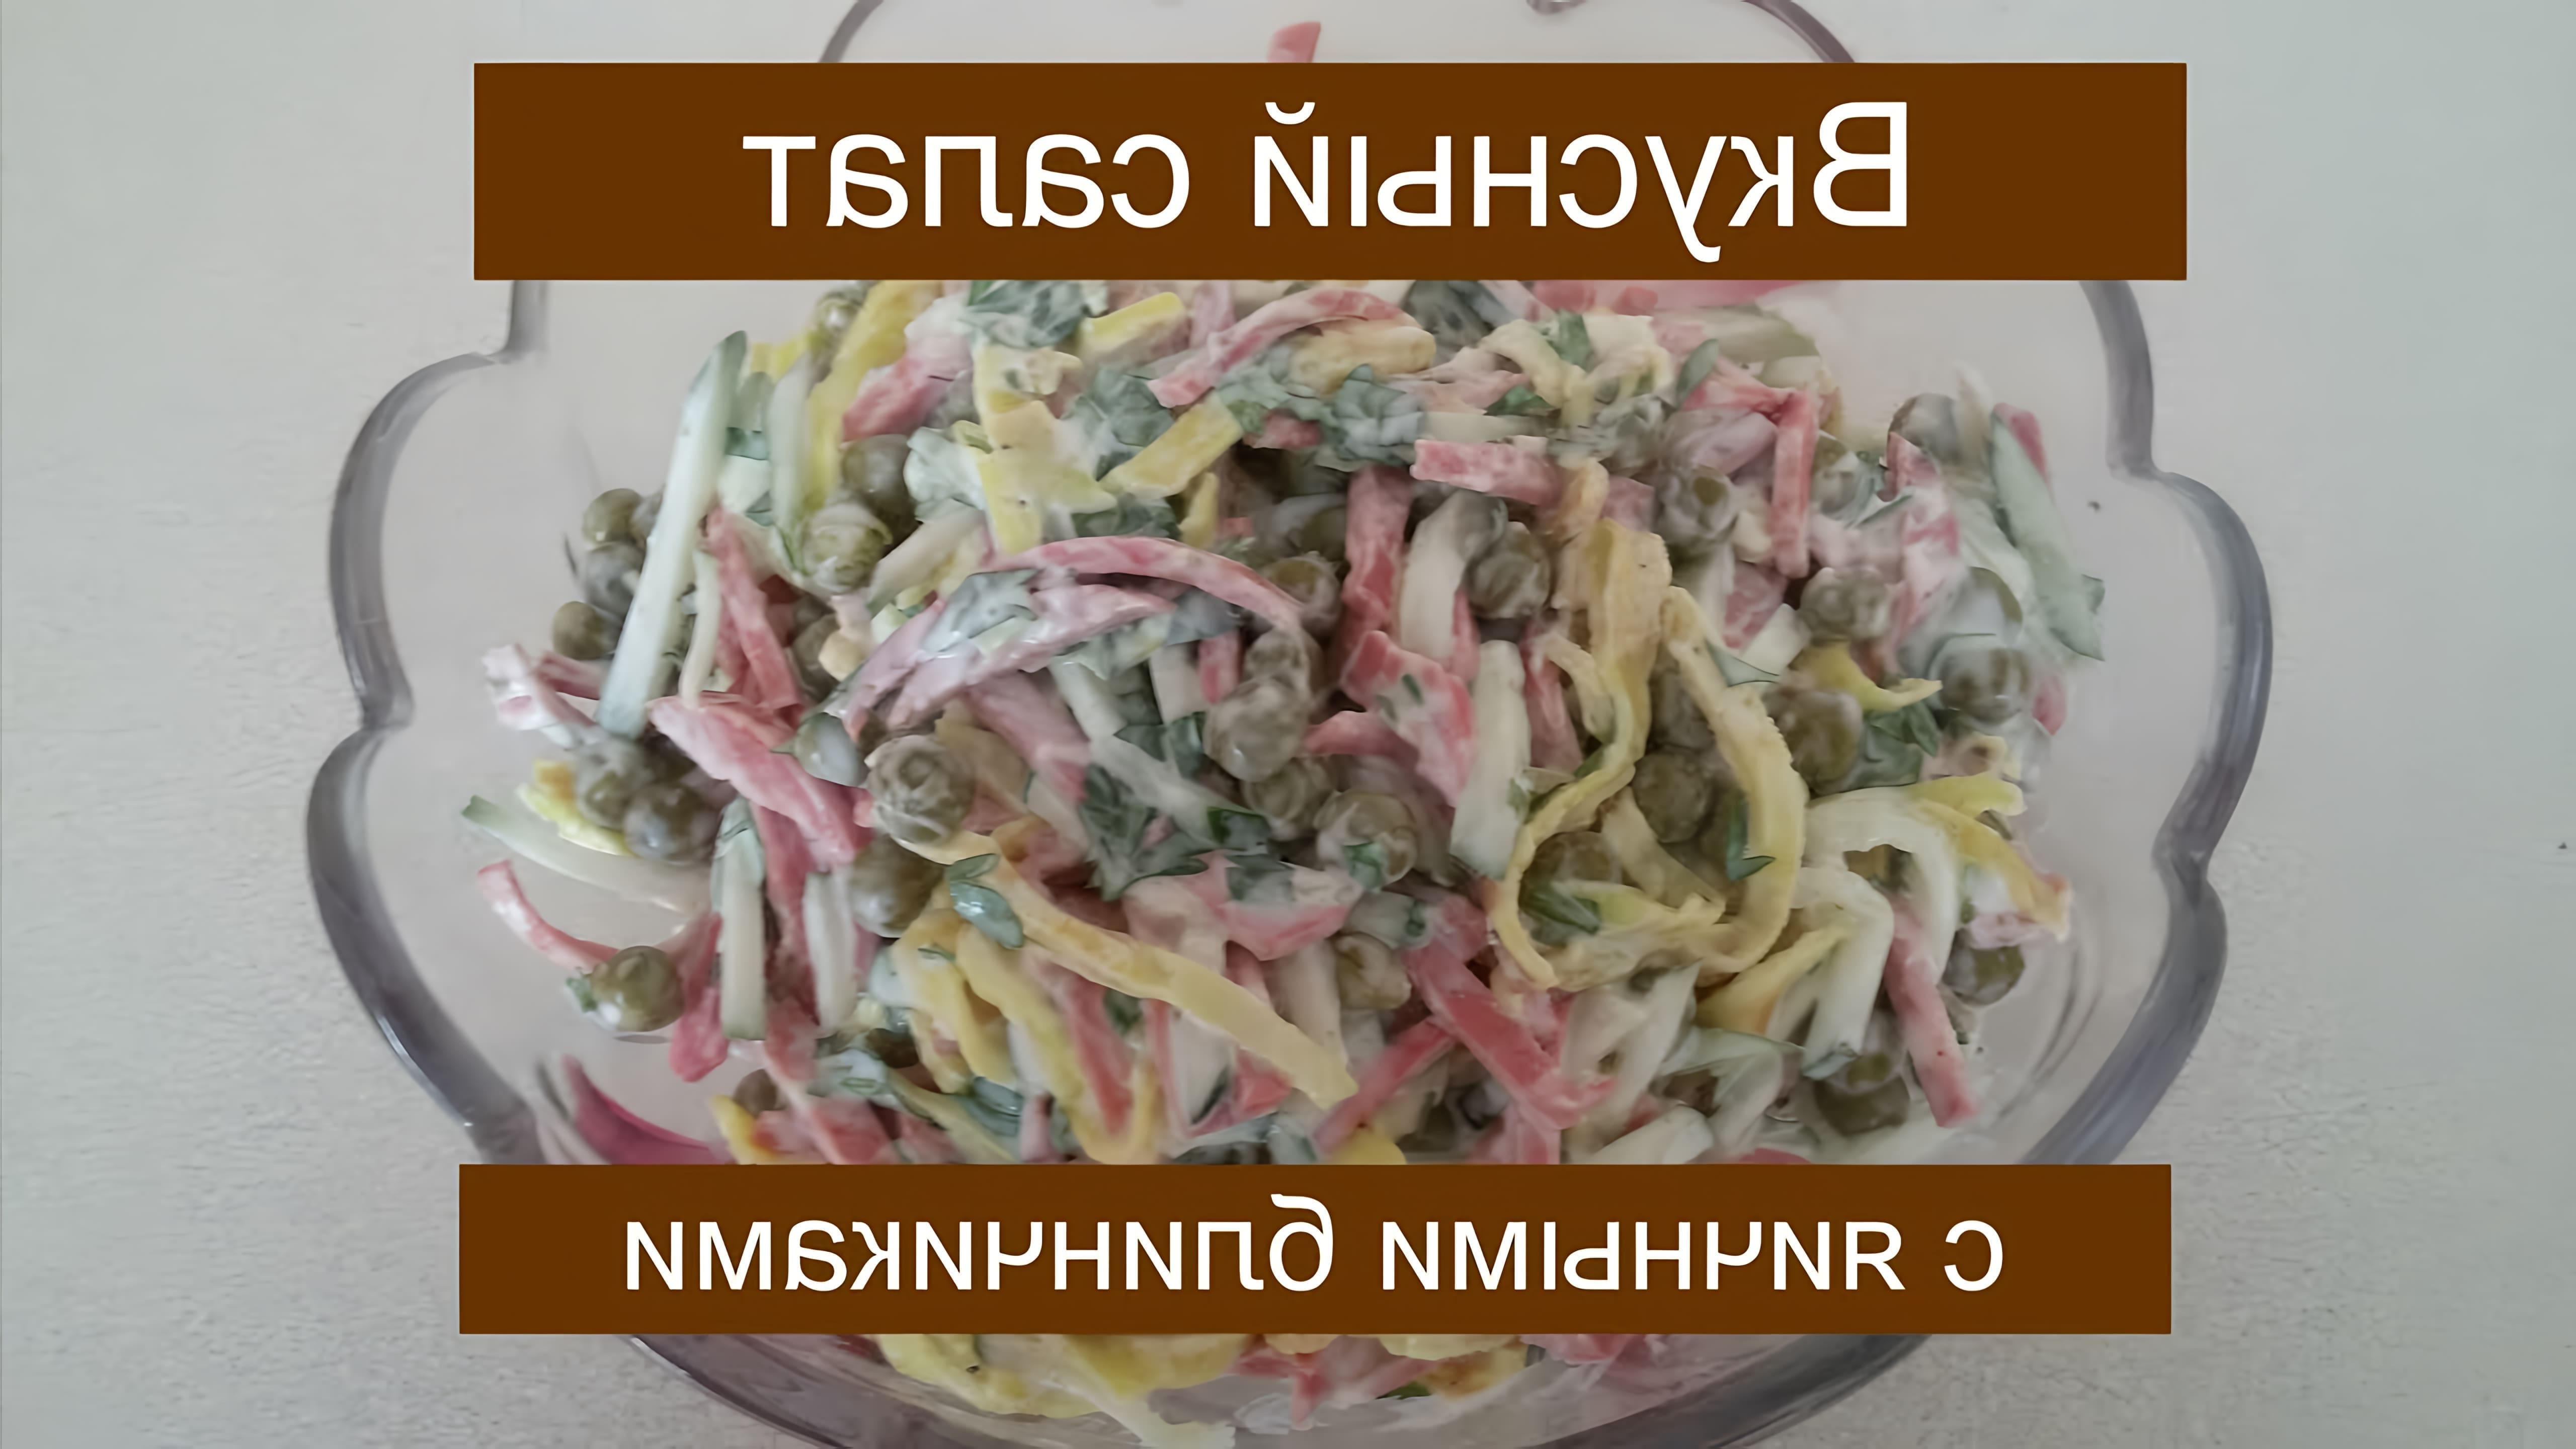 В этом видео демонстрируется процесс приготовления салата с яичными блинчиками